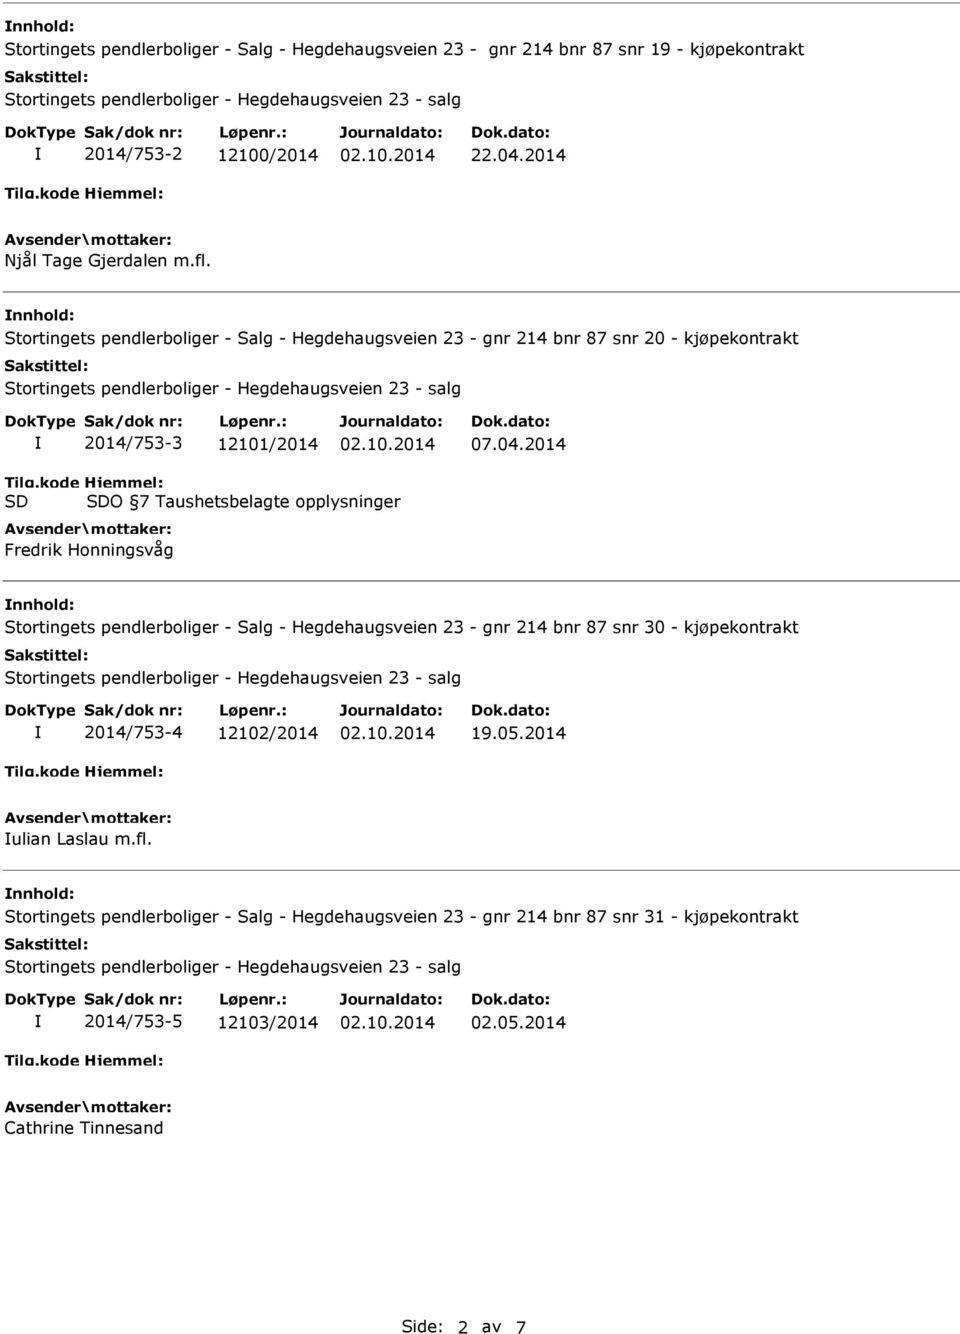 2014 O 7 Taushetsbelagte opplysninger Fredrik Honningsvåg Stortingets pendlerboliger - Salg - Hegdehaugsveien 23 - gnr 214 bnr 87 snr 30 - kjøpekontrakt